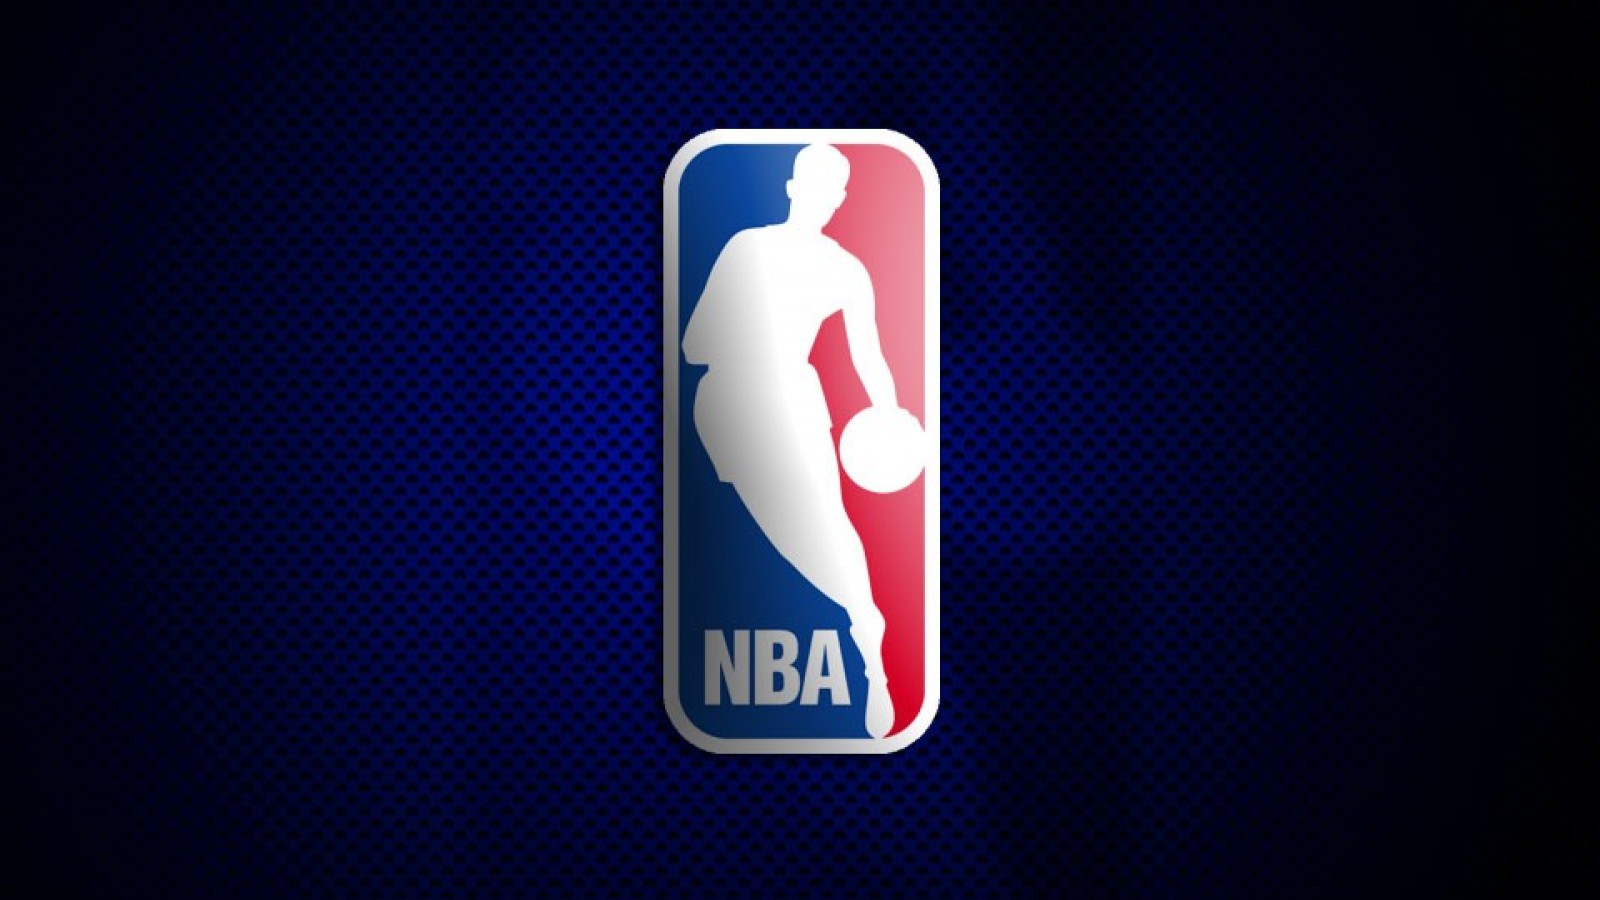 NBA Logo Blue wallpaper HD Free desktop background 2016 in category